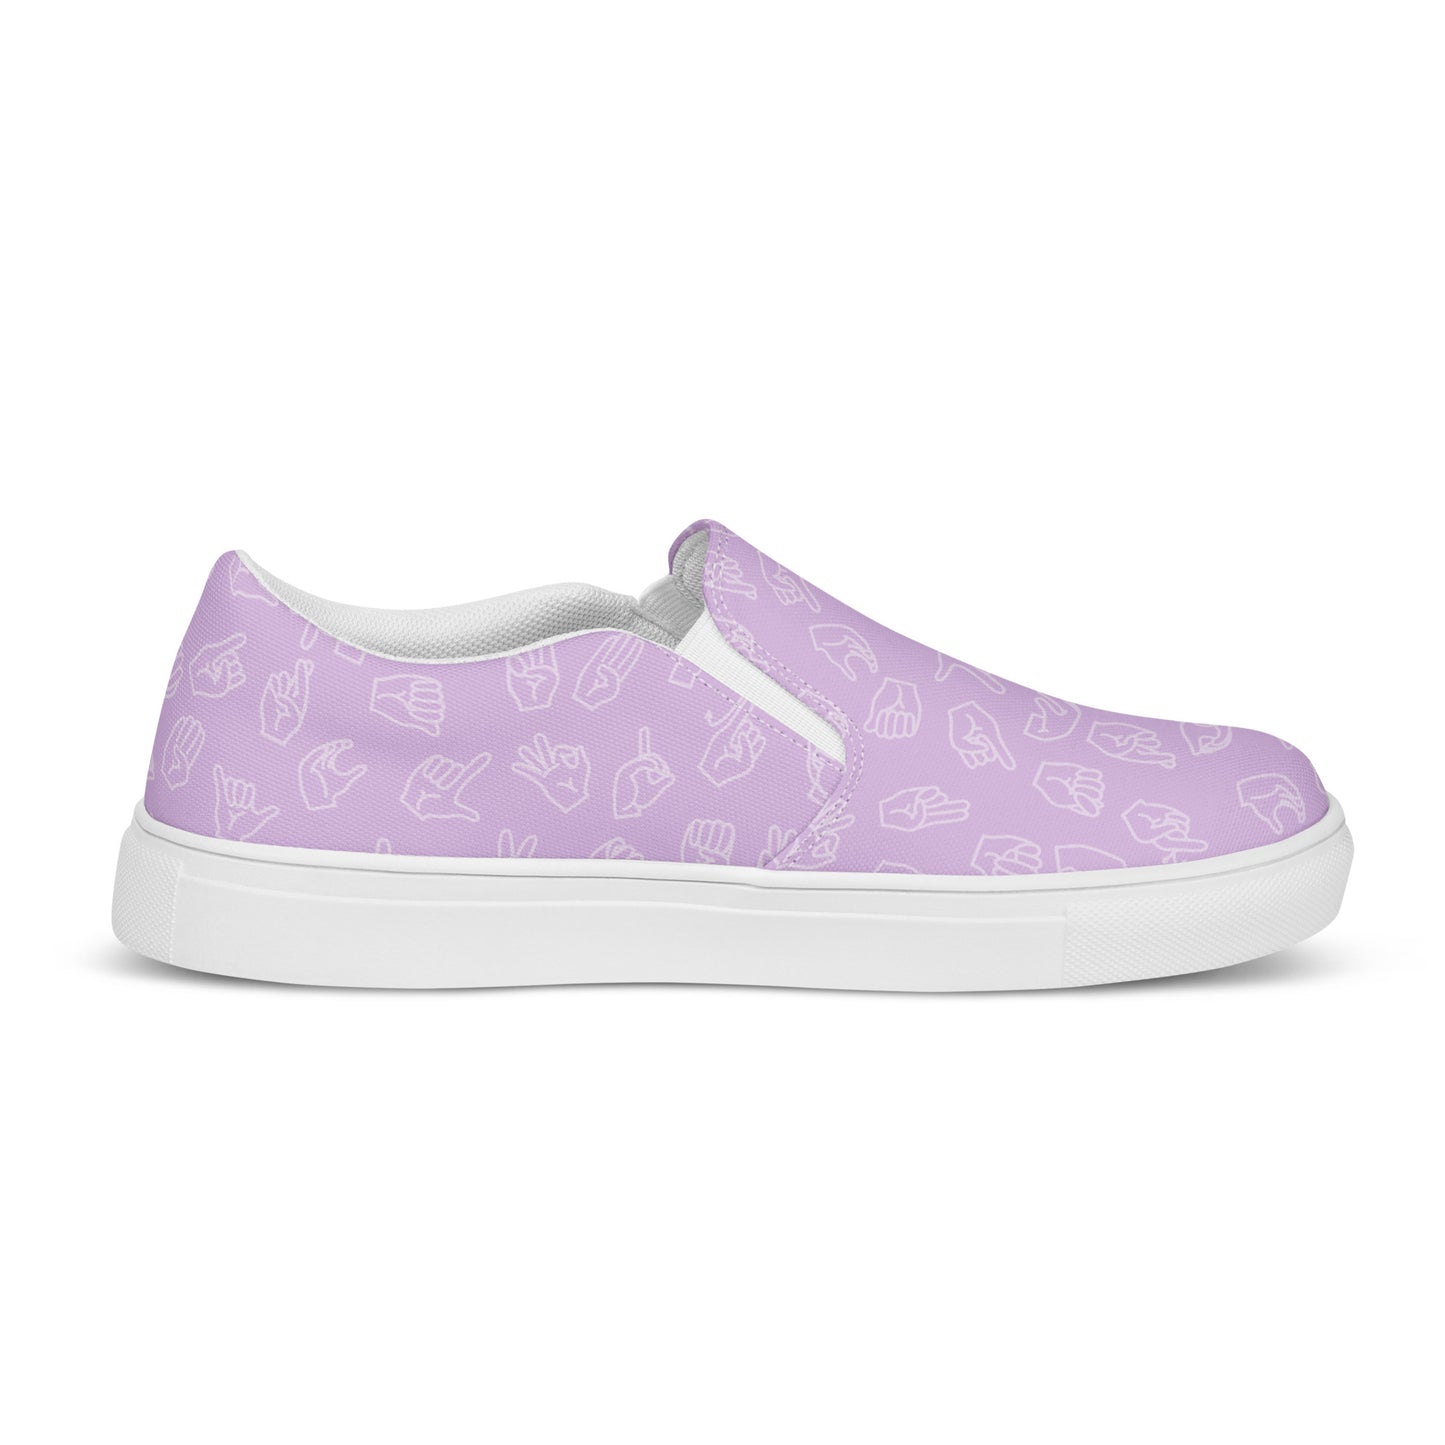 Lavender ASL Slip-on Canvas Shoes (Women's Sizes)